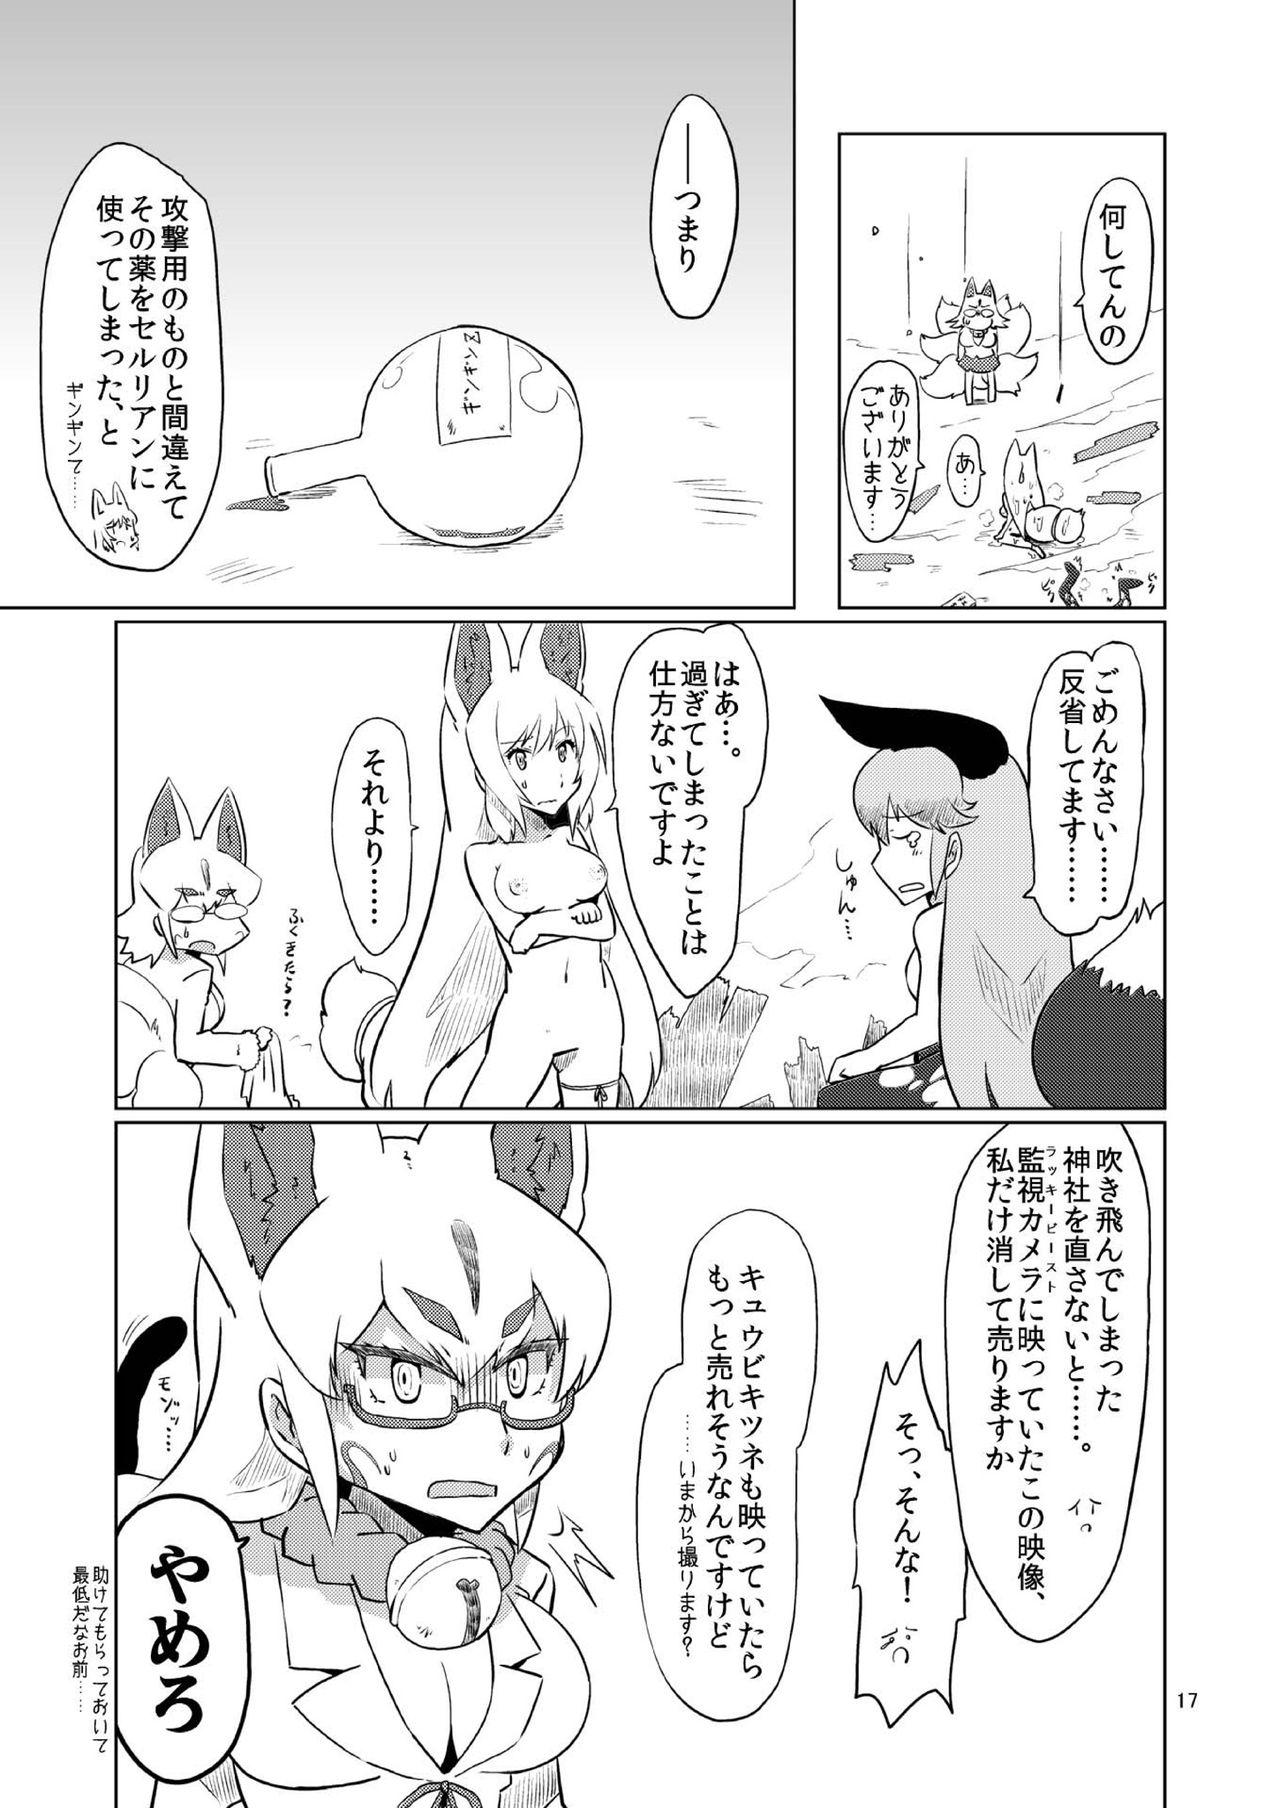 Dando Oinarisama vs Shokushu - Kemono friends Long - Page 17